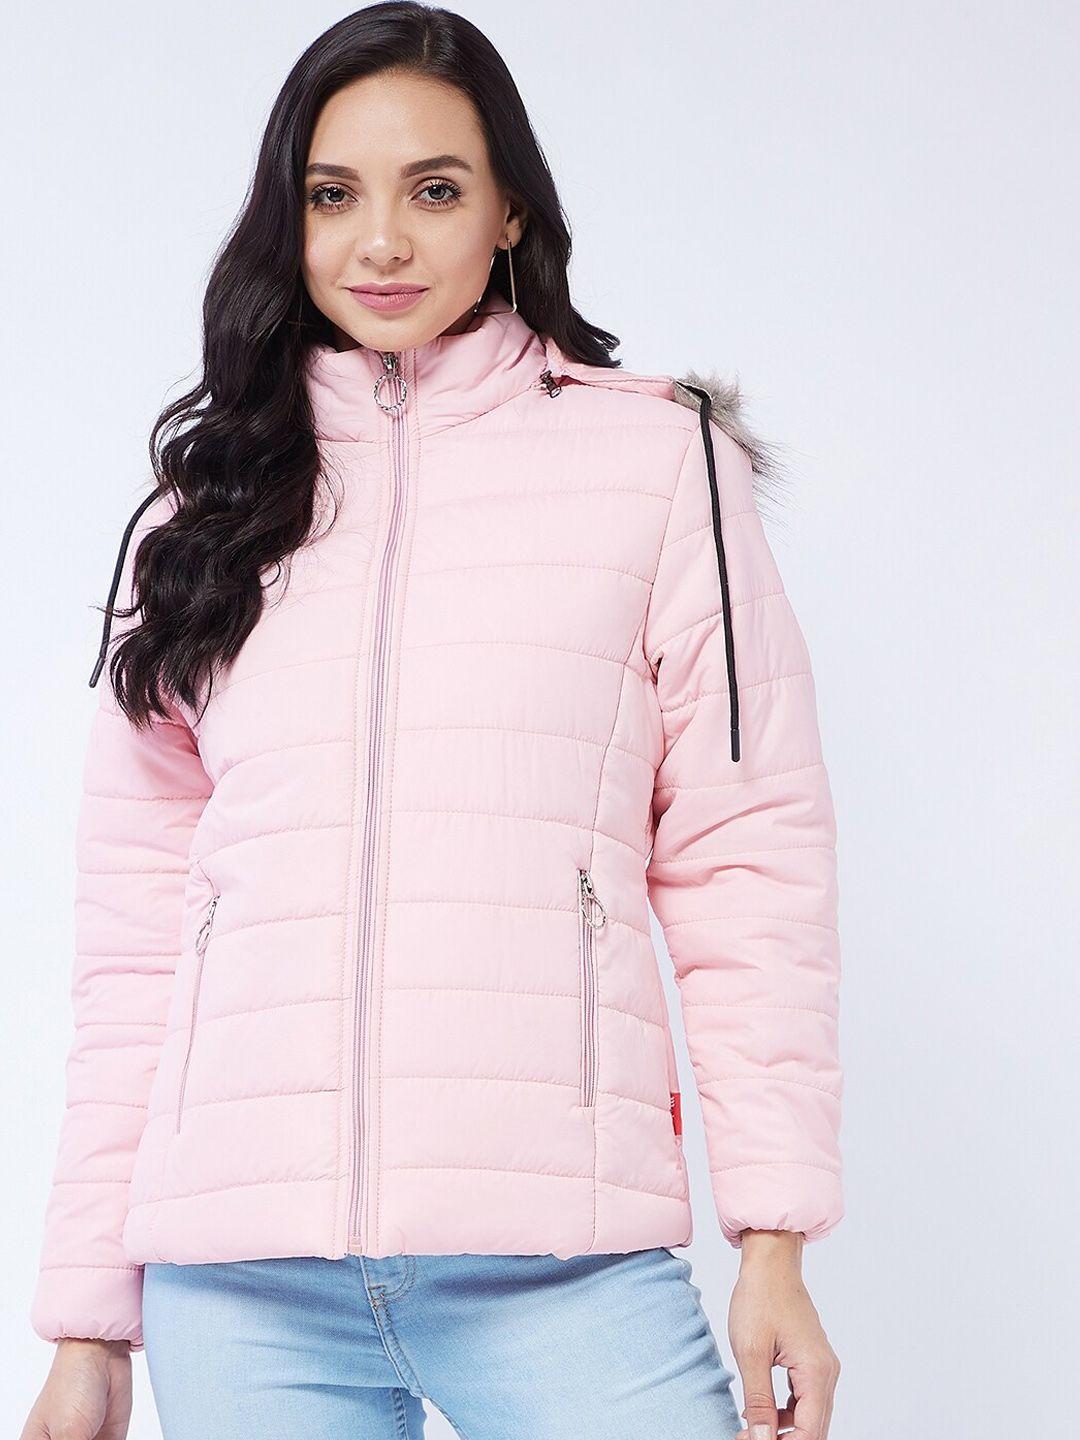 modeve women pink lightweight parka jacket